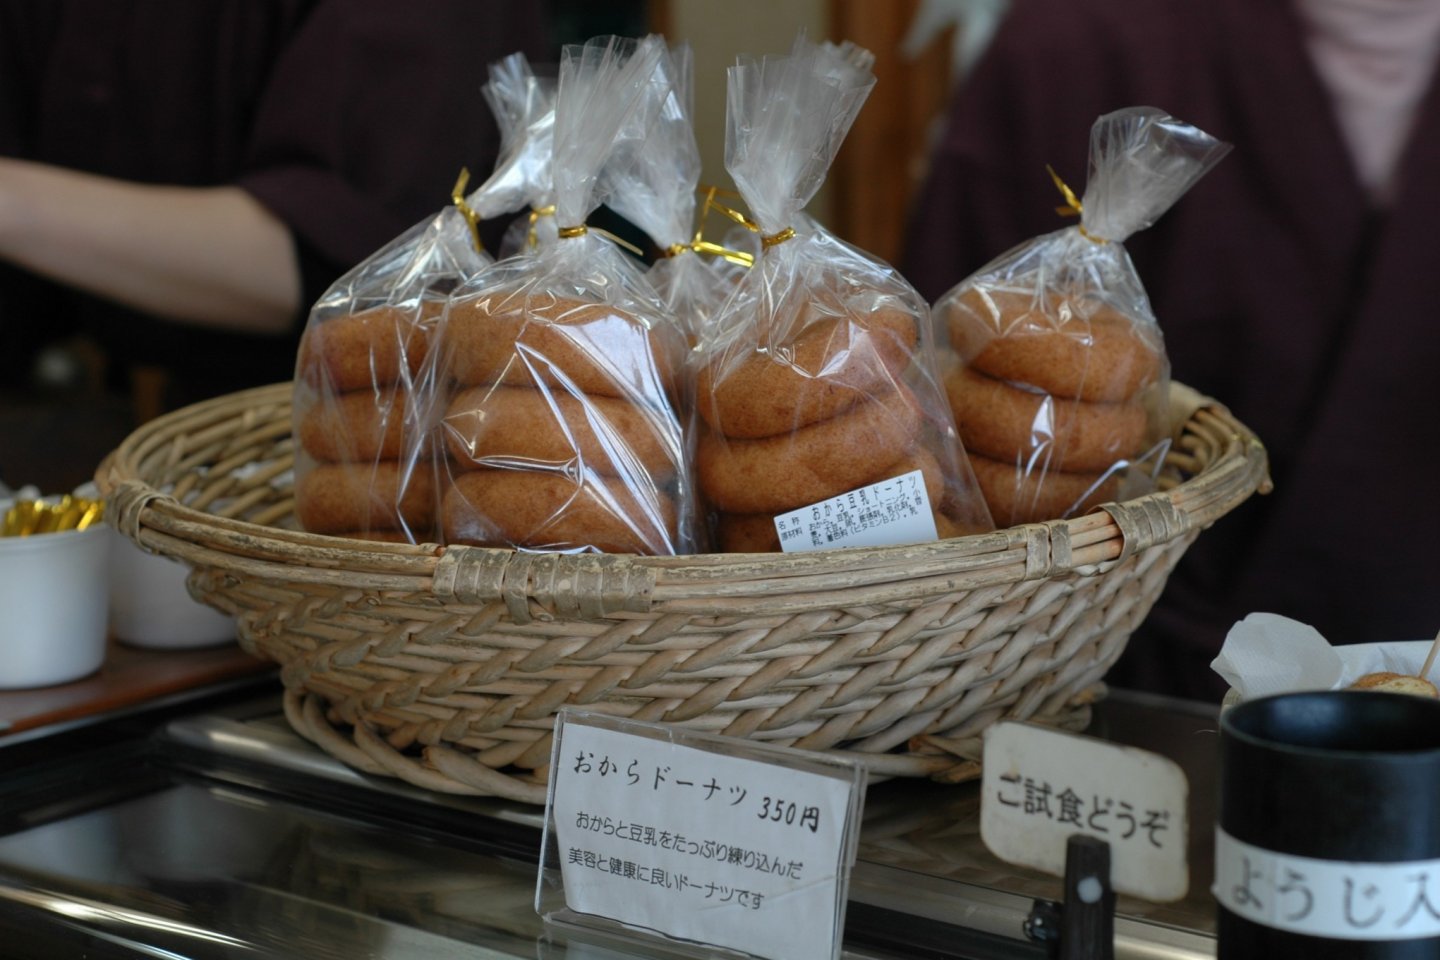 Những chiếc bánh donut đậu phụ này có lẽ là những chiếc donut có lợi cho sức khỏe nhất trên thế giới - phải nhai nhiều nhưng không có dầu mỡ và độ ngọt hoàn hảo.